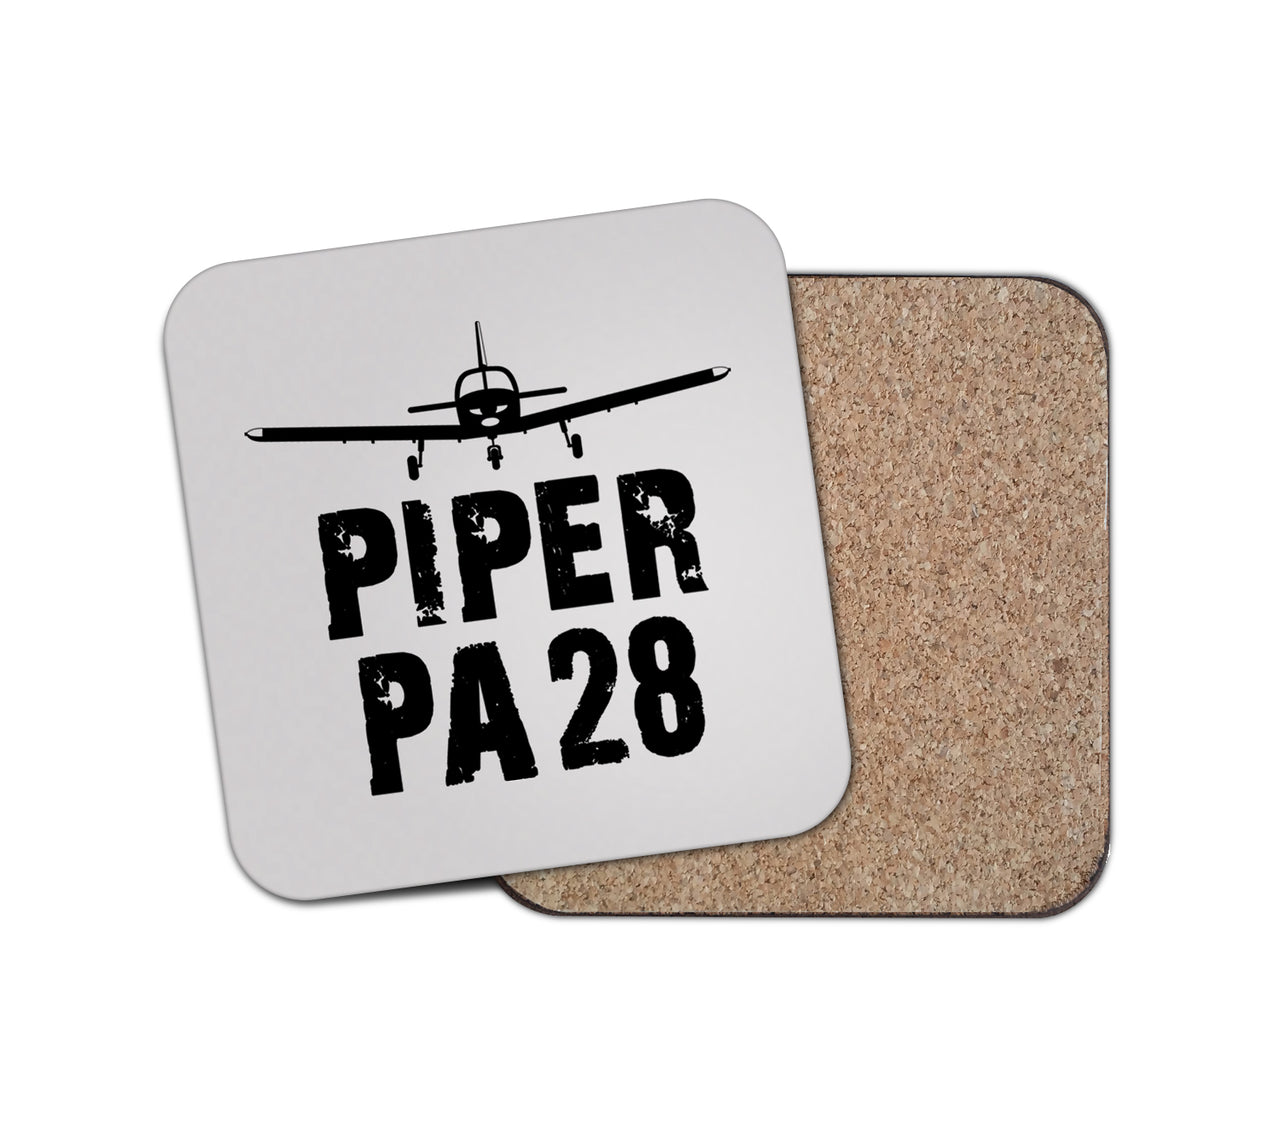 Piper PA28 & Plane Designed Coasters